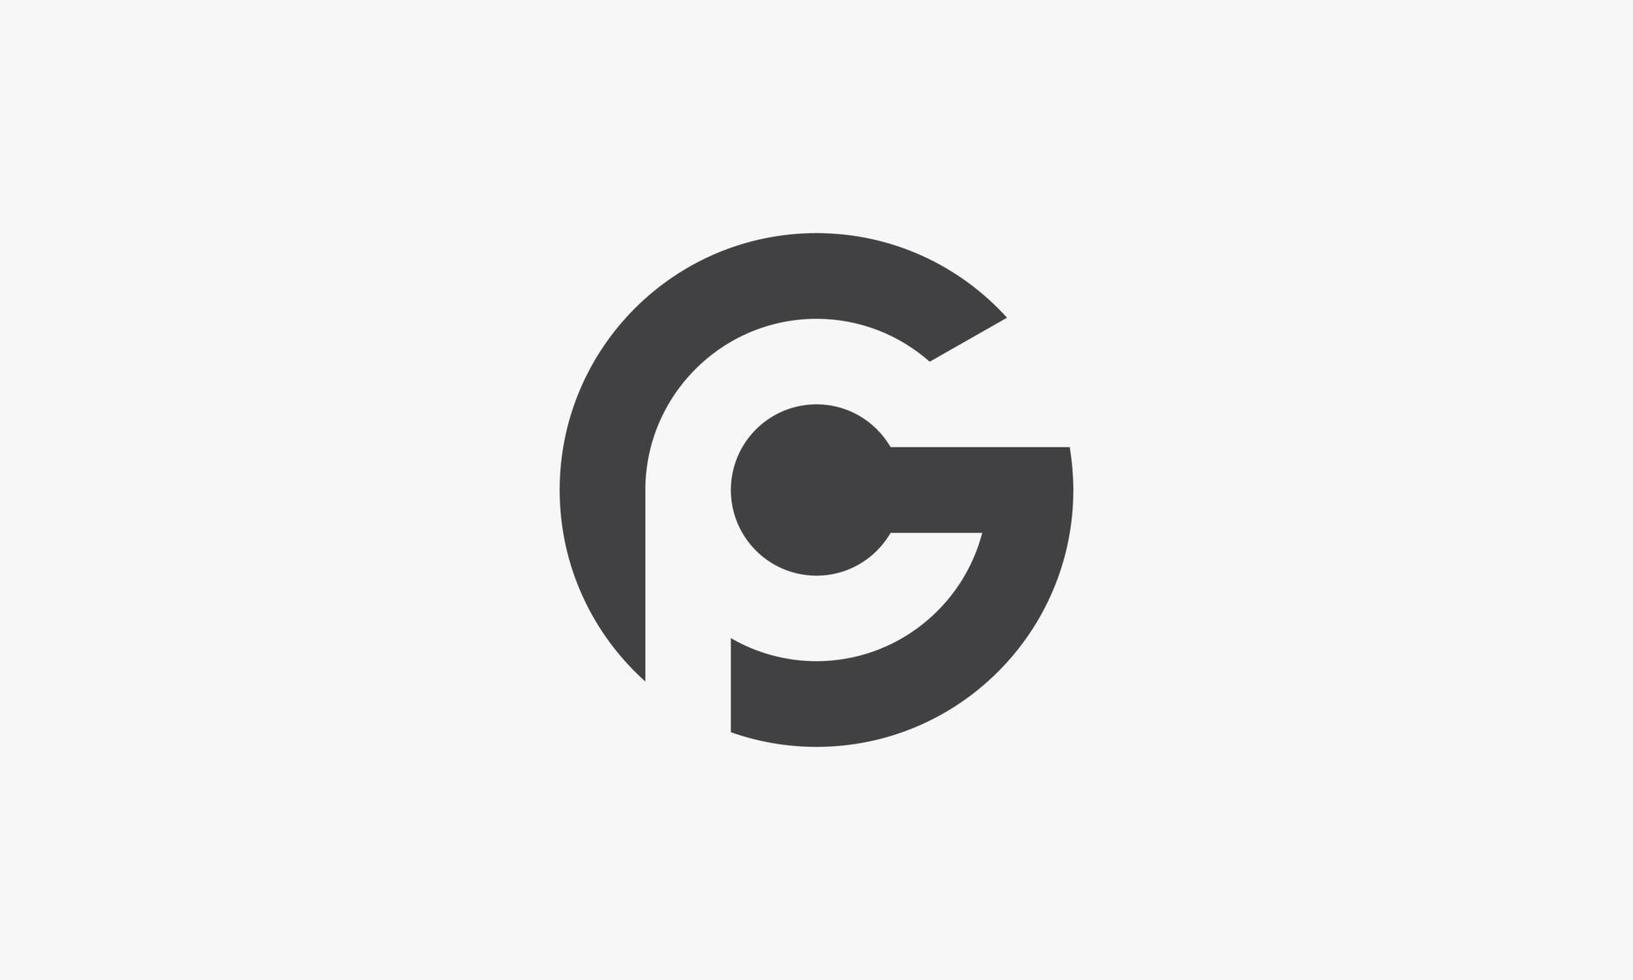 gp of og brief logo concept geïsoleerd op een witte achtergrond. vector